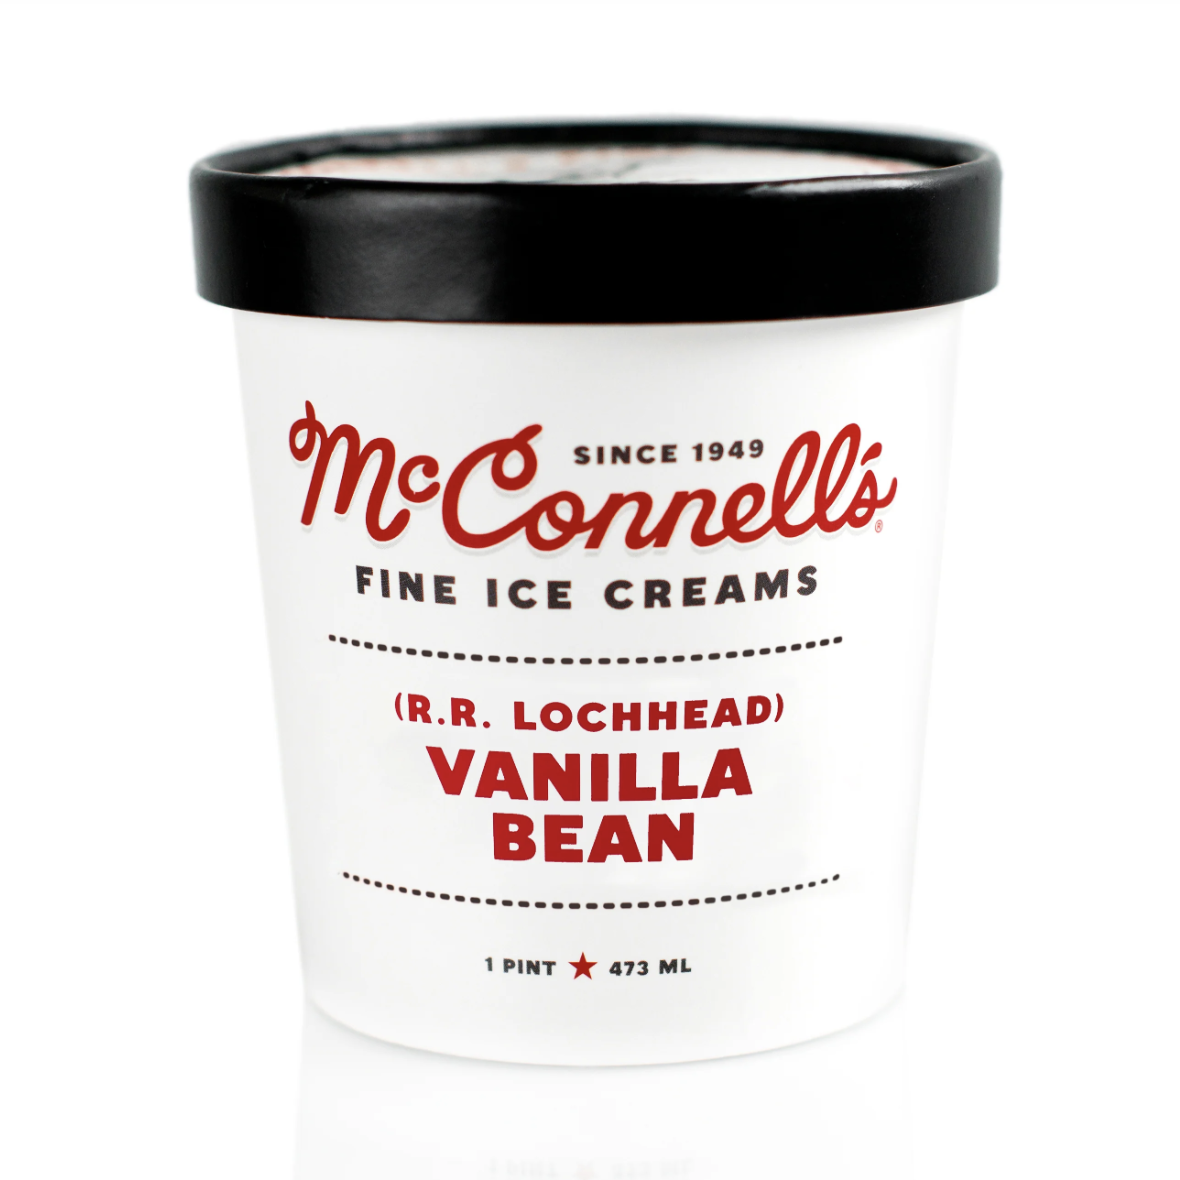 McConnell's Vanilla Bean Ice Cream